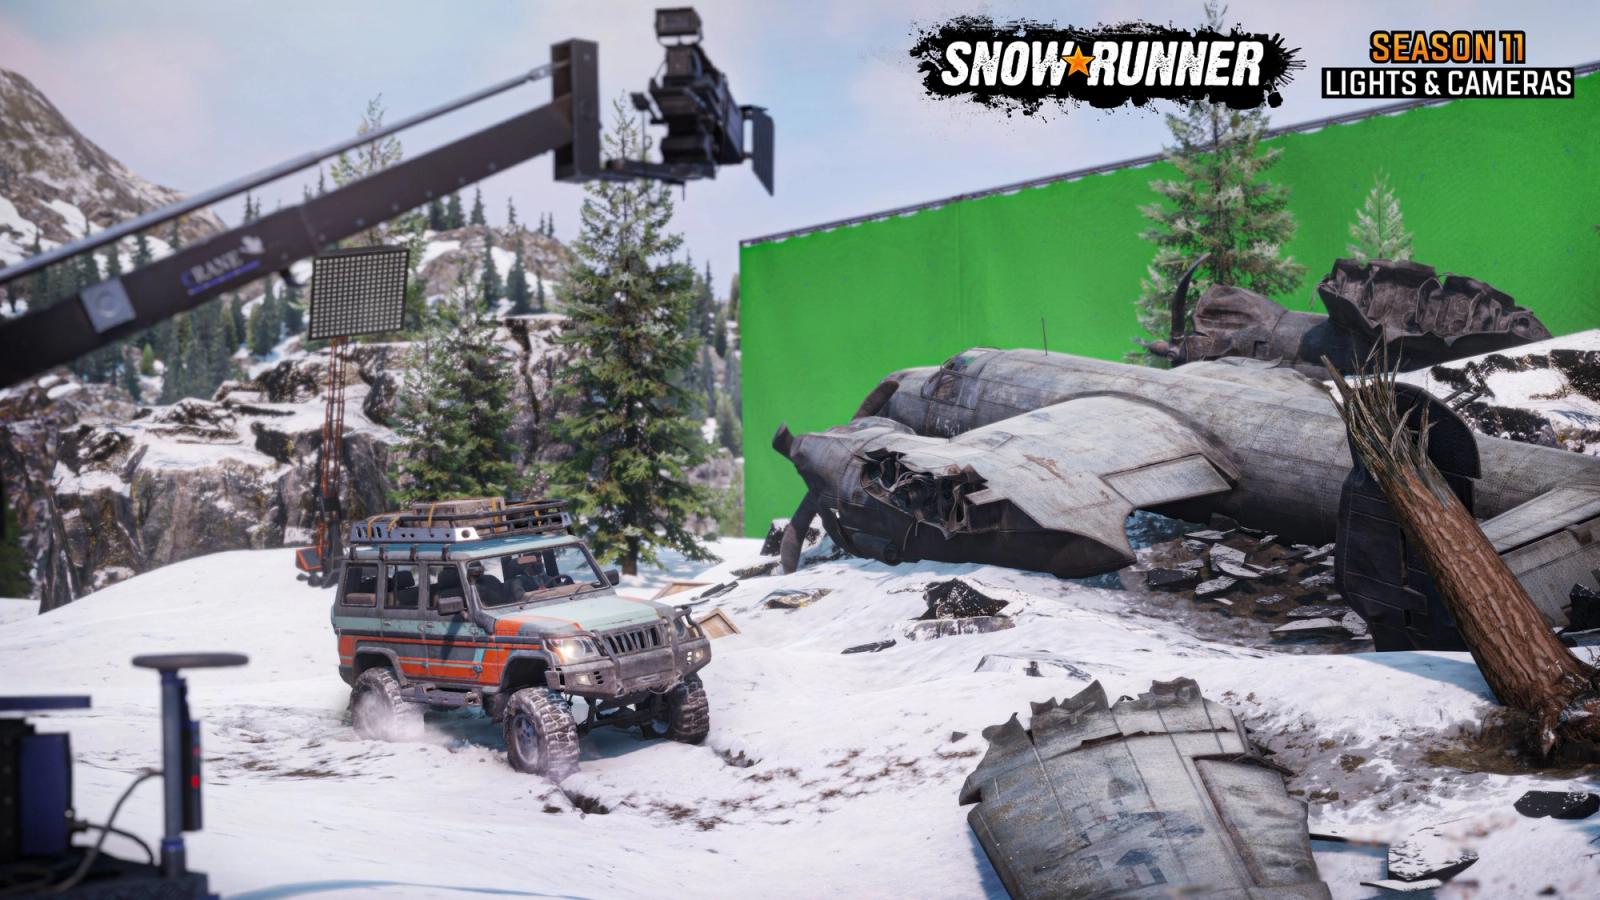 SnowRunner Season 11 Lights & Cameras